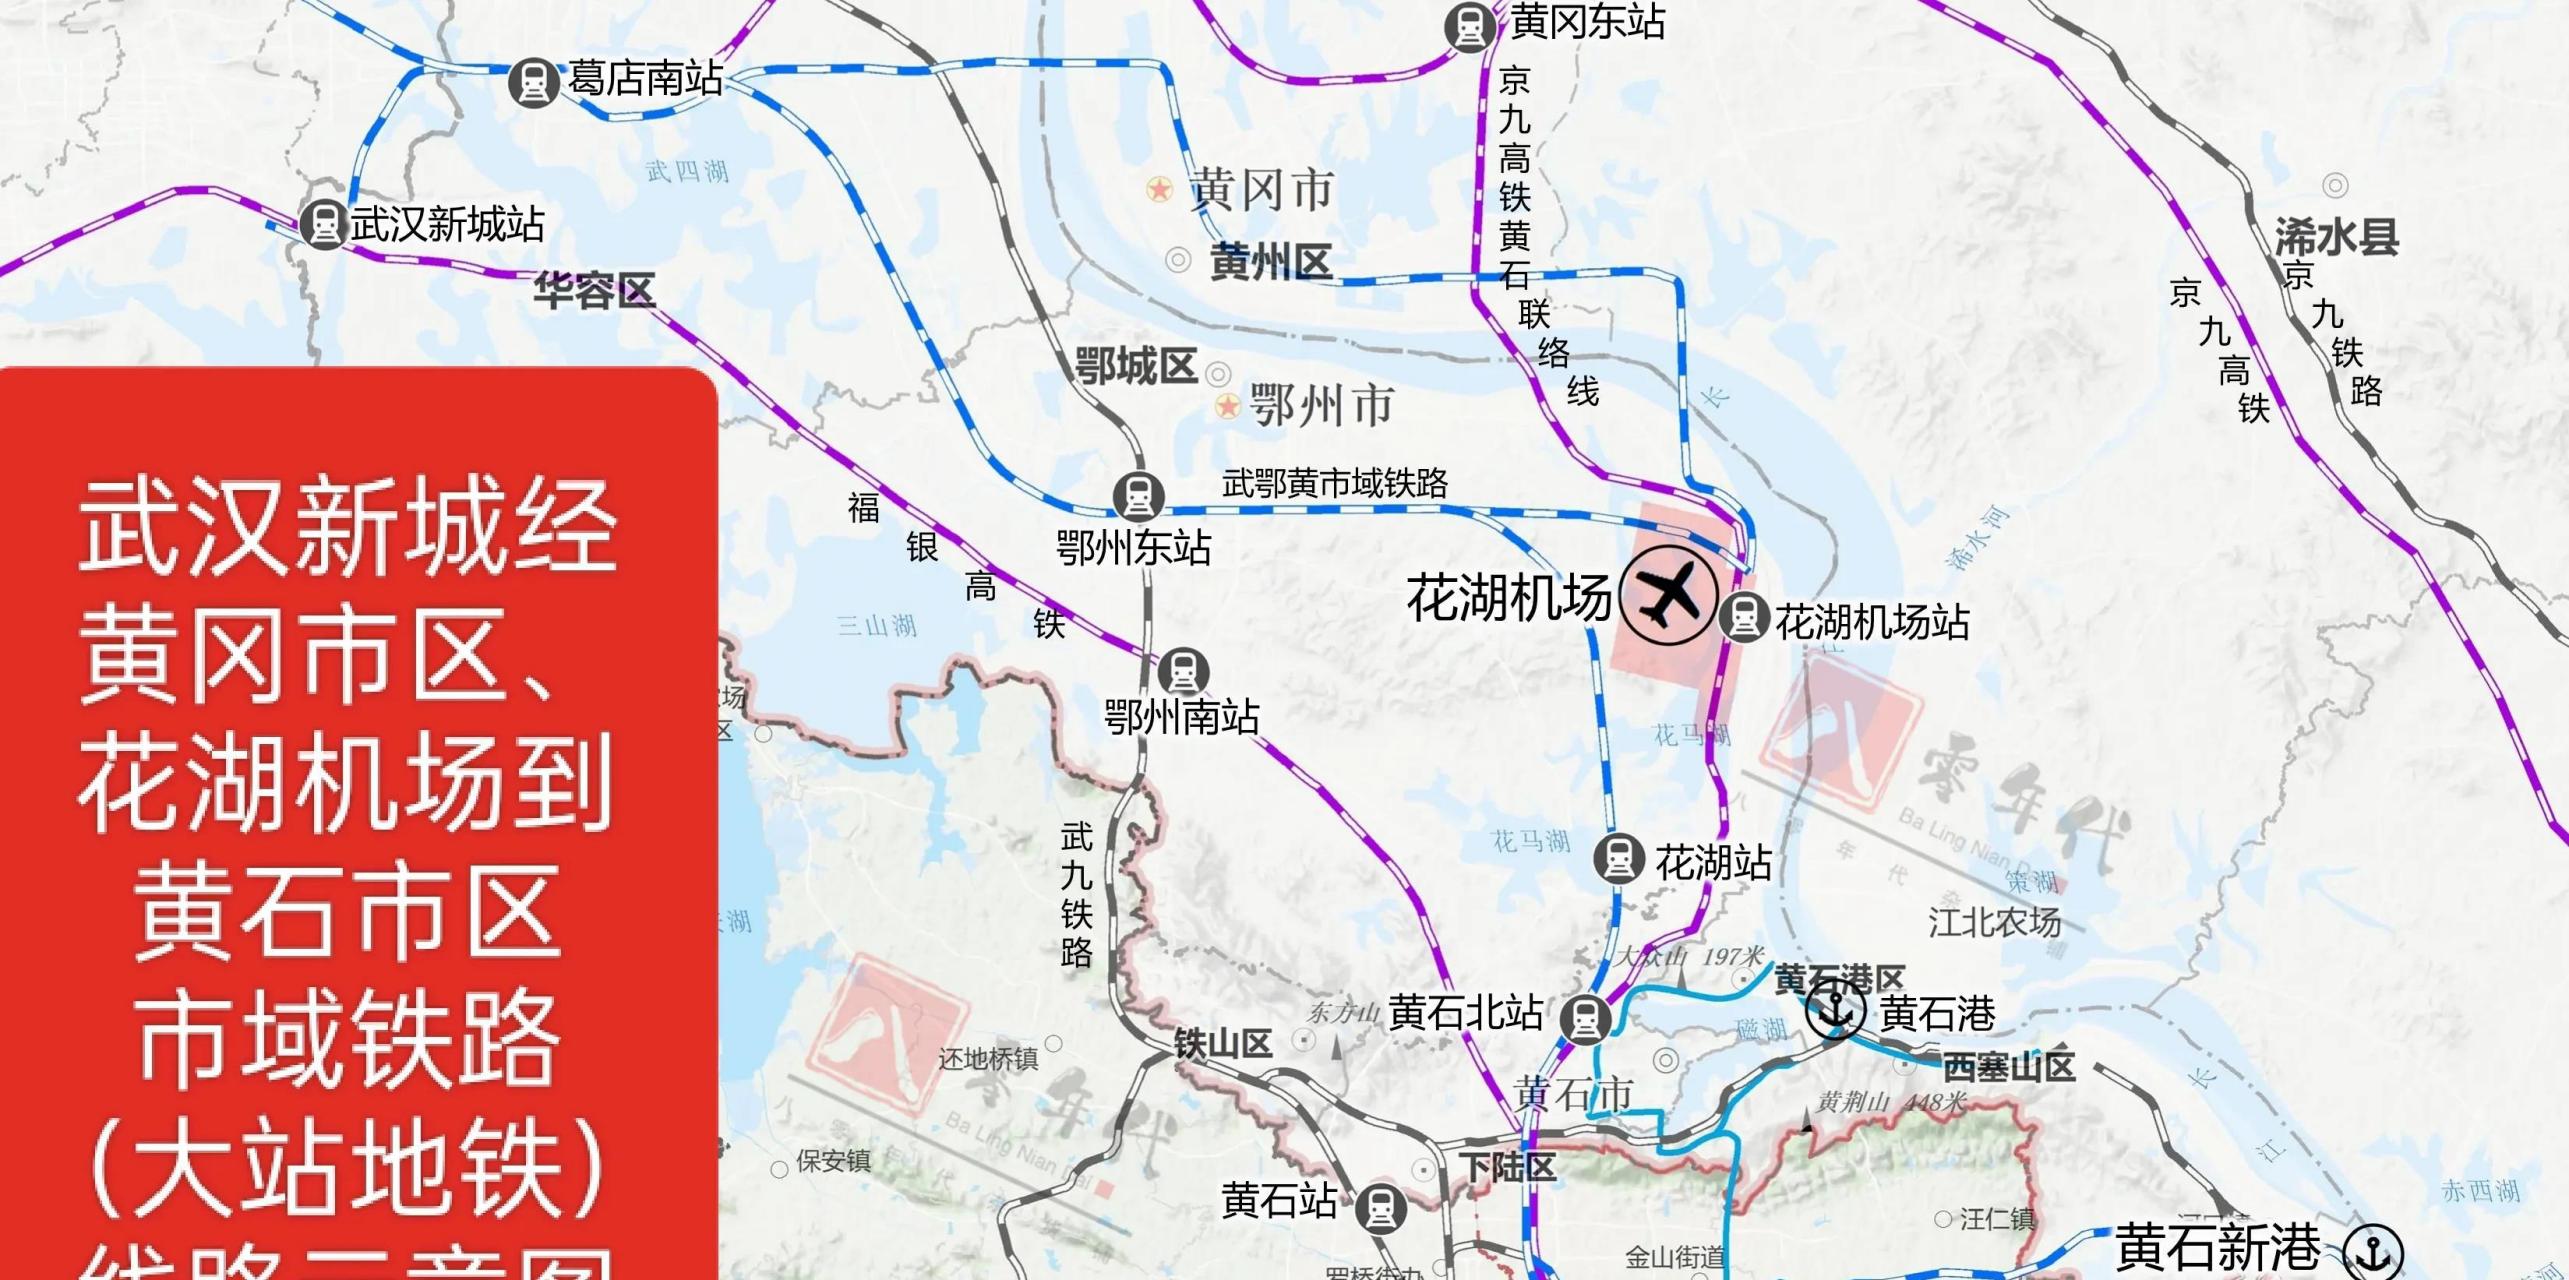 武汉经黄冈市区,花湖机场到黄石市区市域铁路(大站地铁)已纳入湖北省